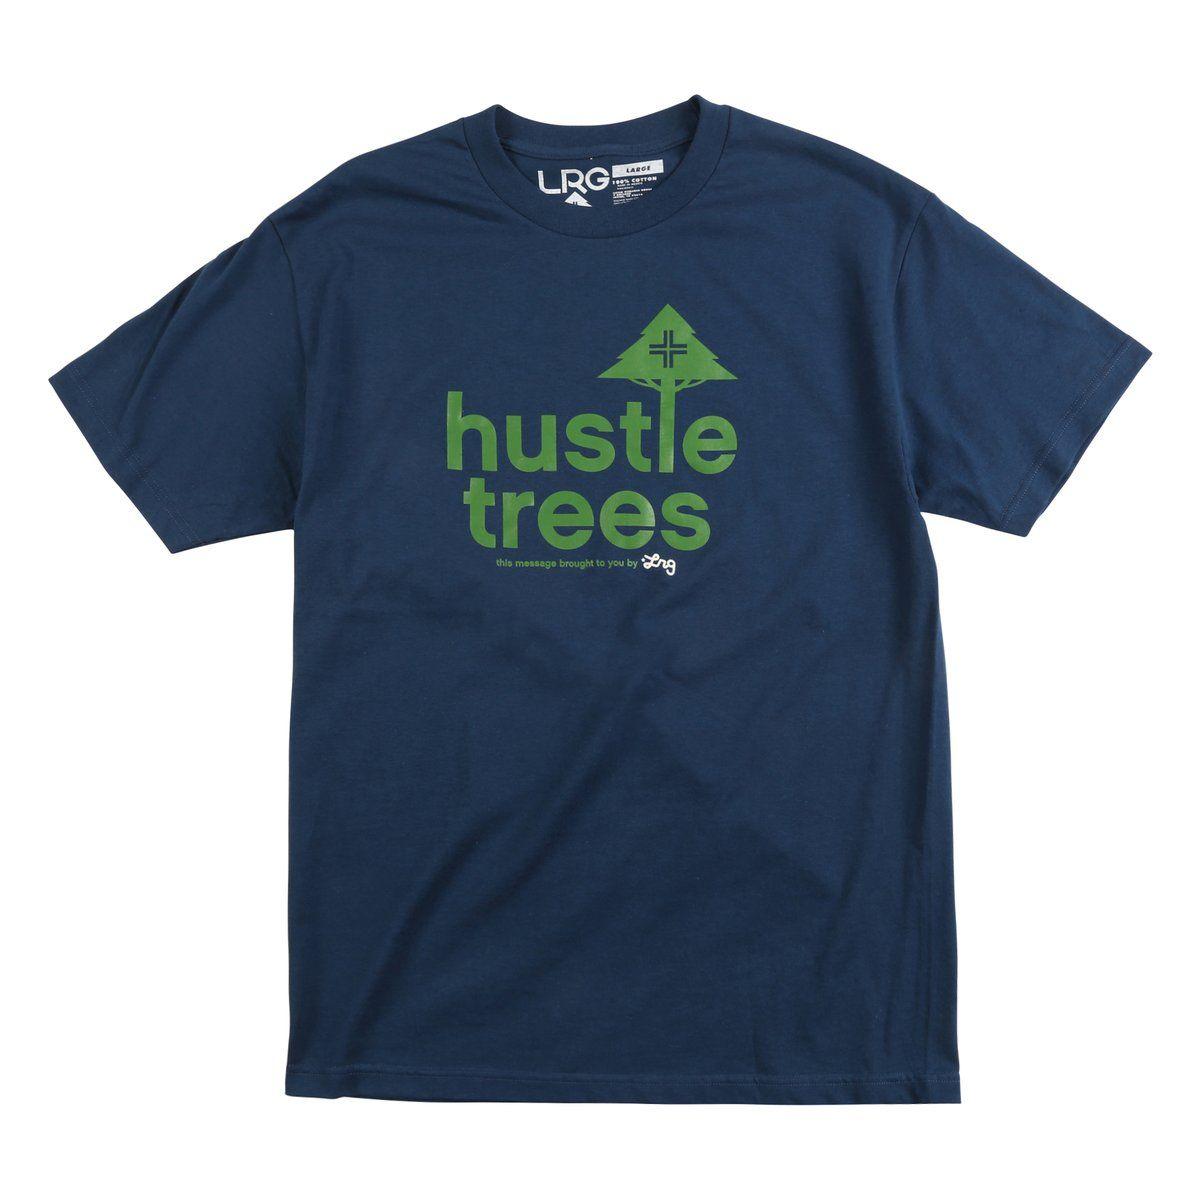 LRG Hustle Trees Logo - LRG Hustle Trees Tee